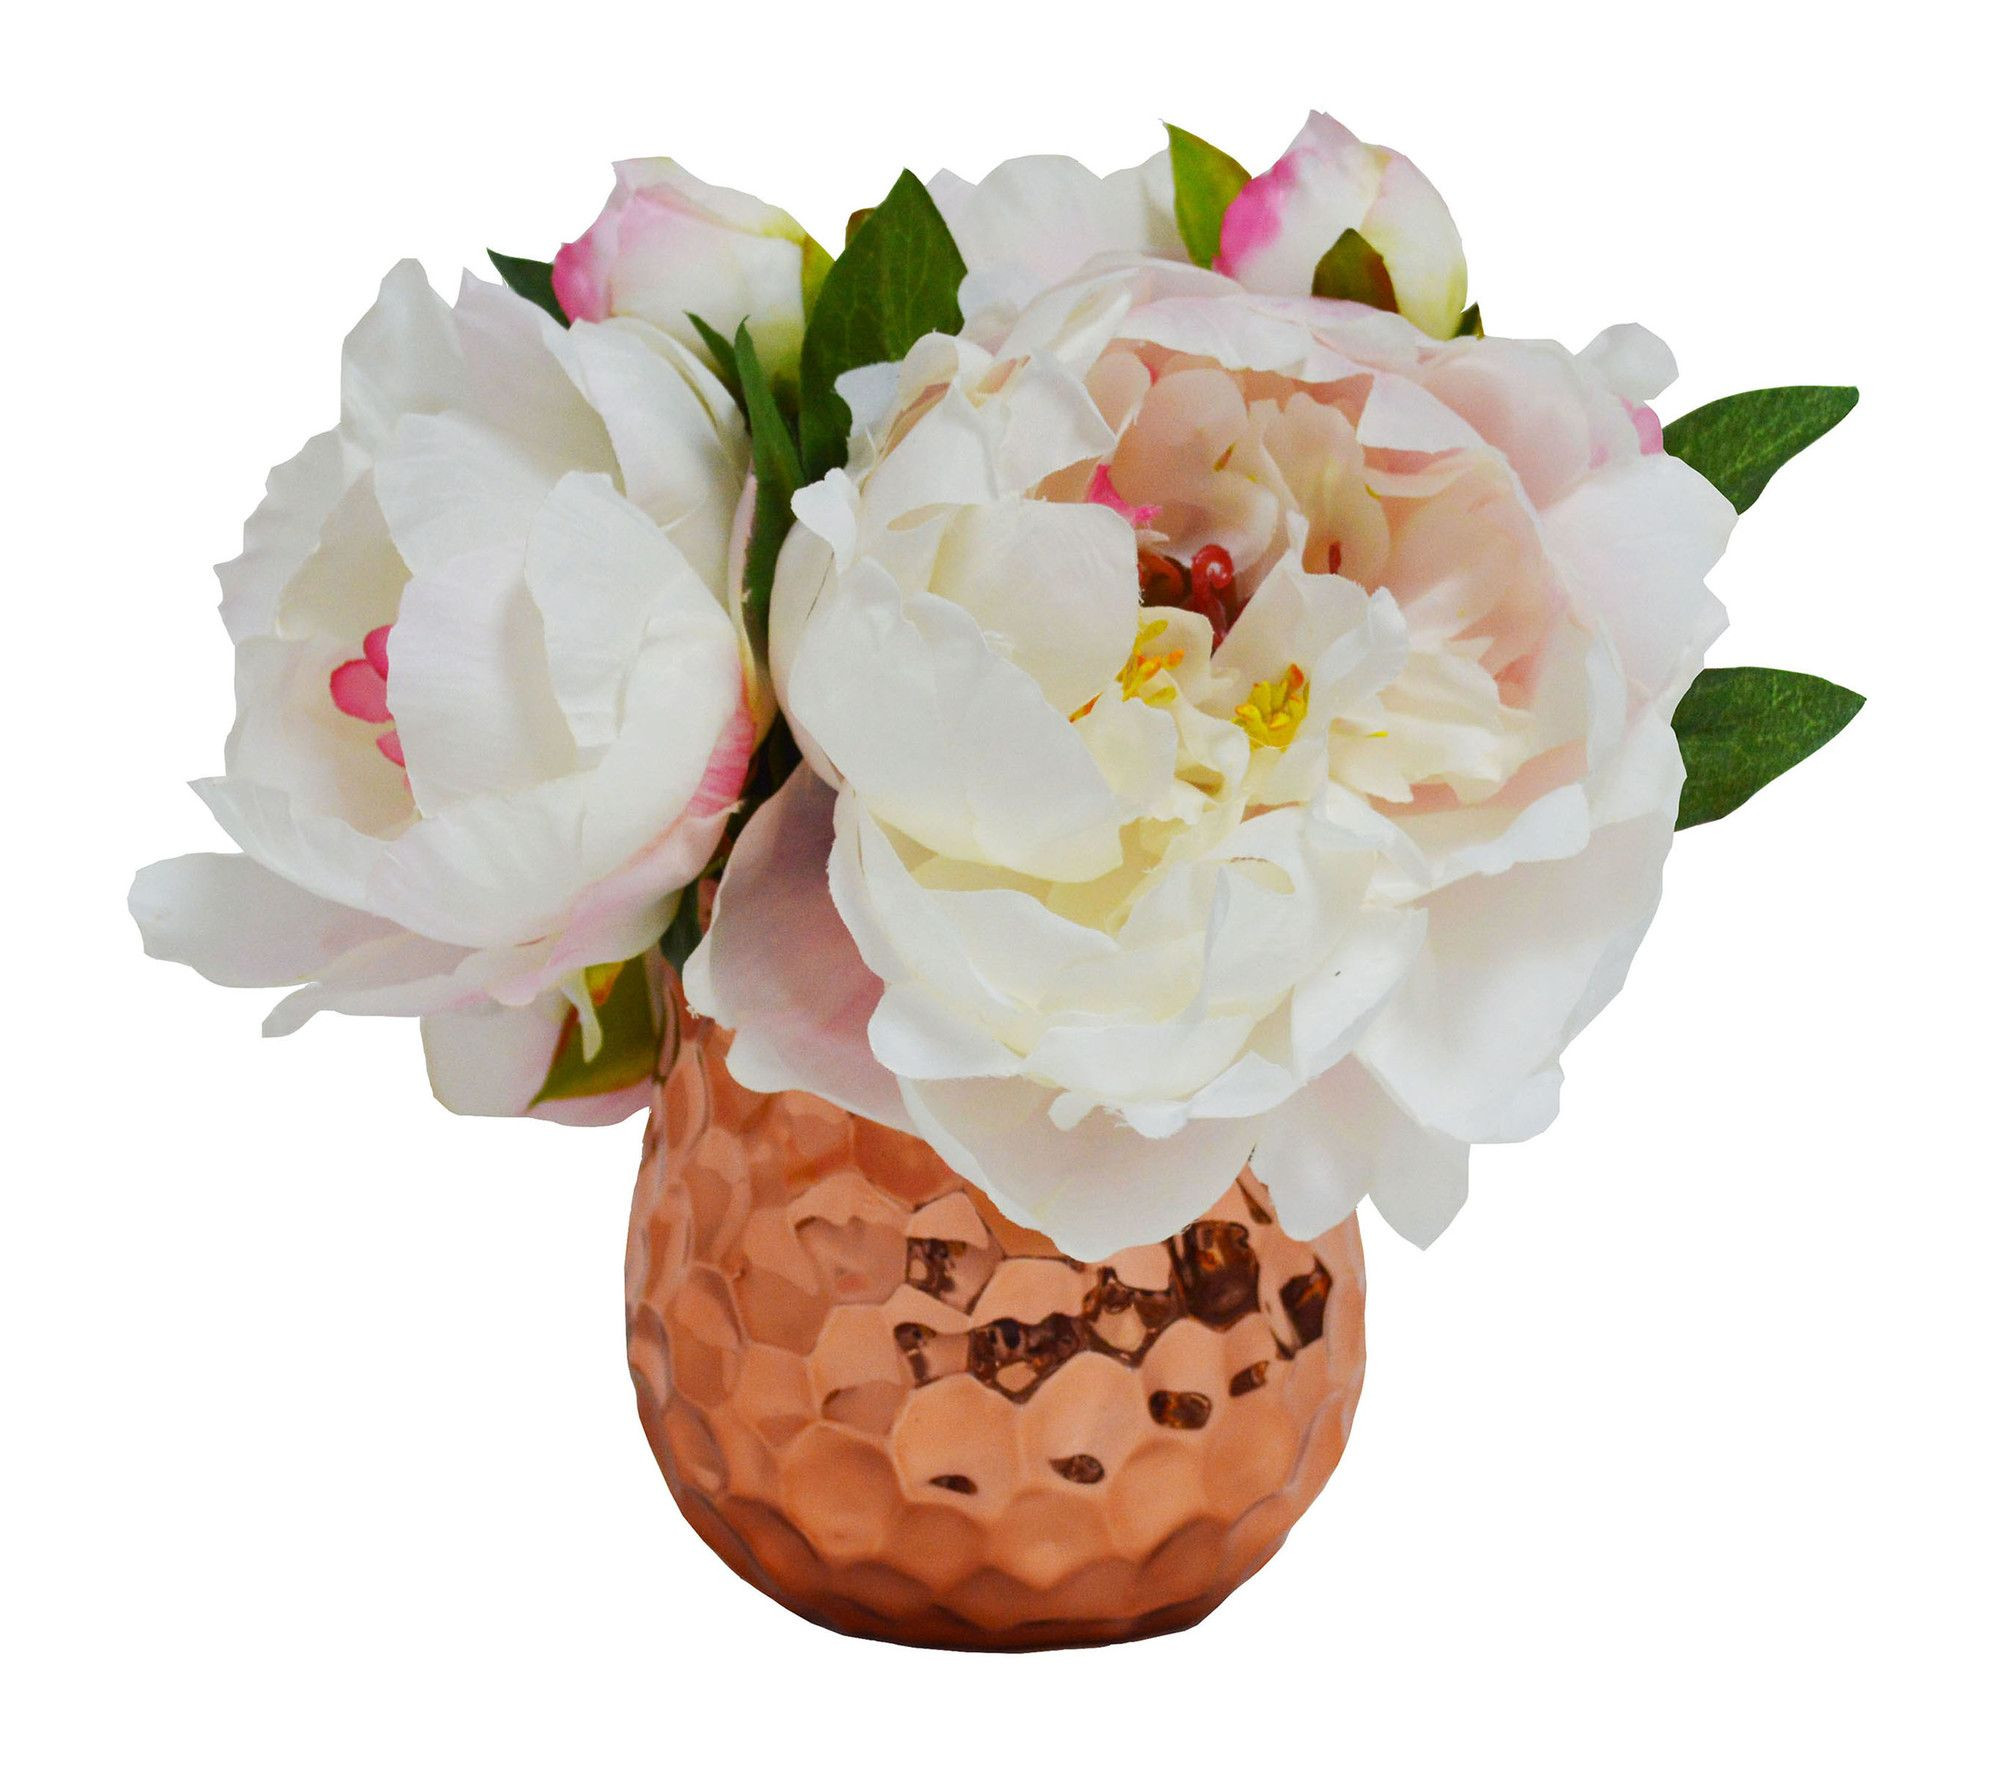 23 Spectacular Best Vase for Peonies 2024 free download best vase for peonies of peonies in rose vase products pinterest peonies in and vase inside peonies in rose vase